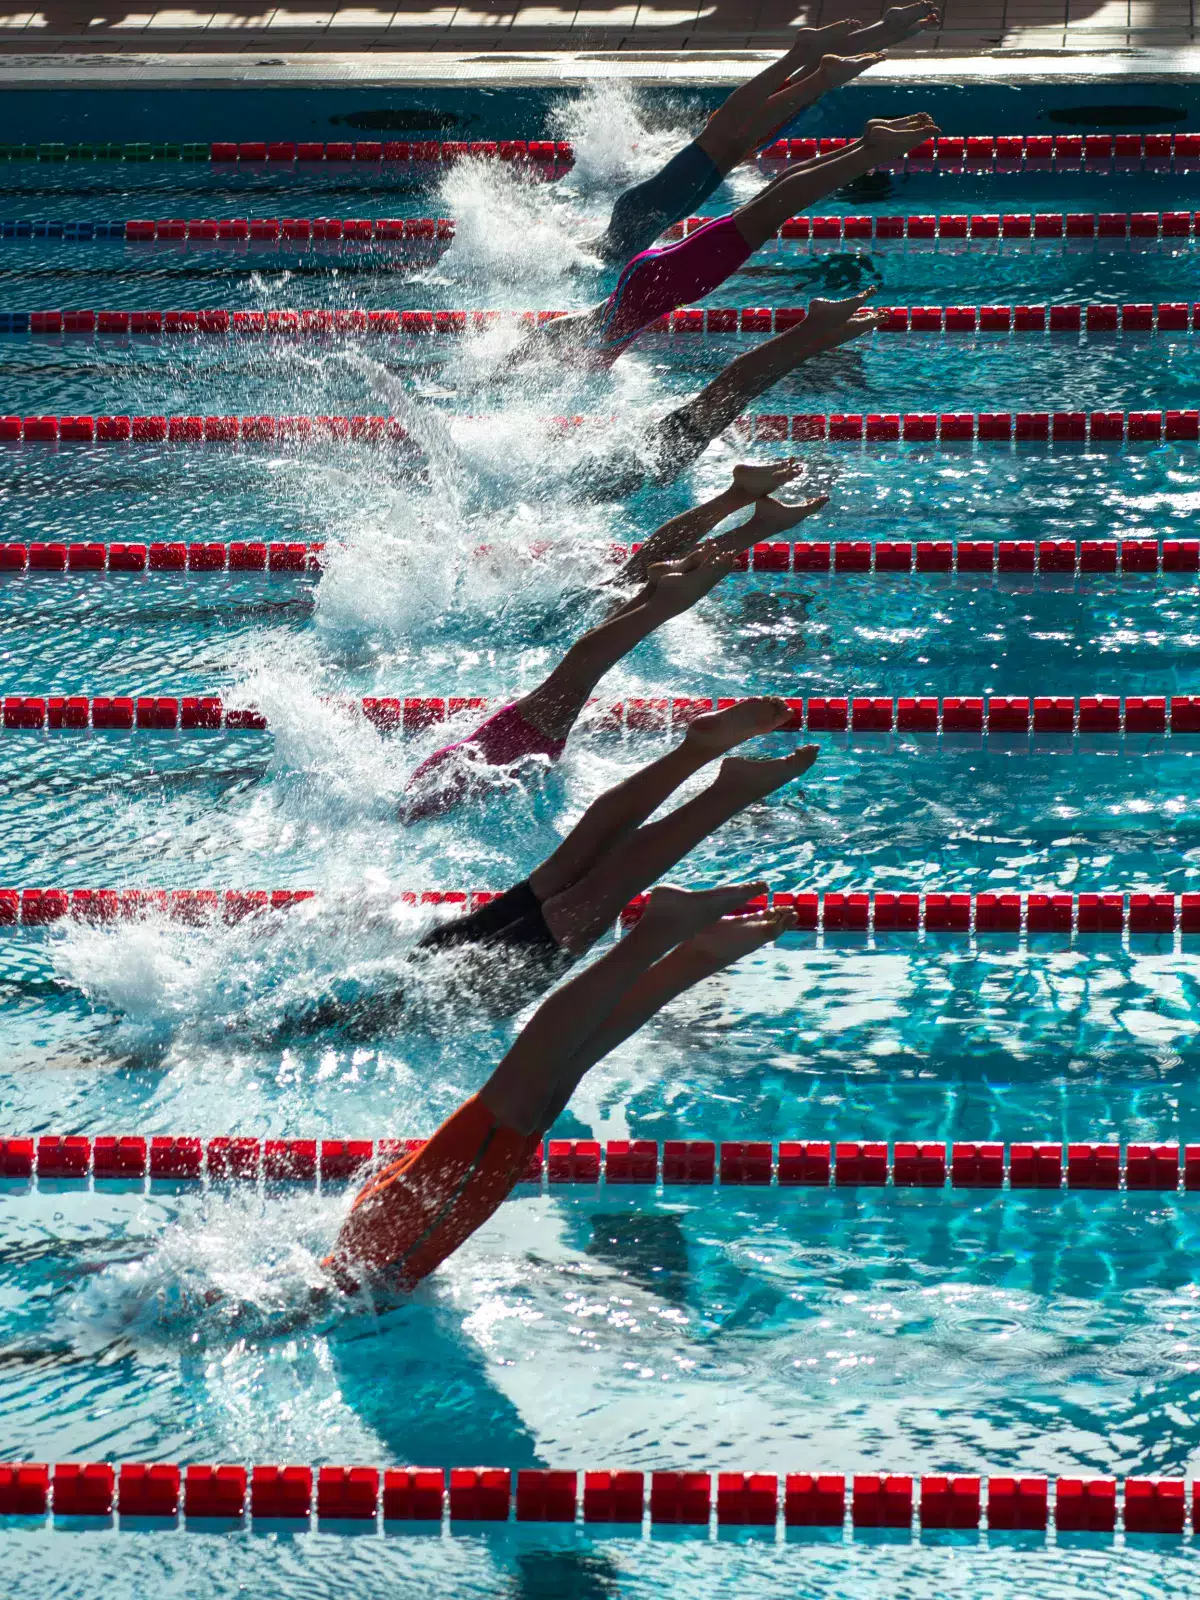 Patrimoine Decathlon : photographie de nageurs plongeant dans une piscine